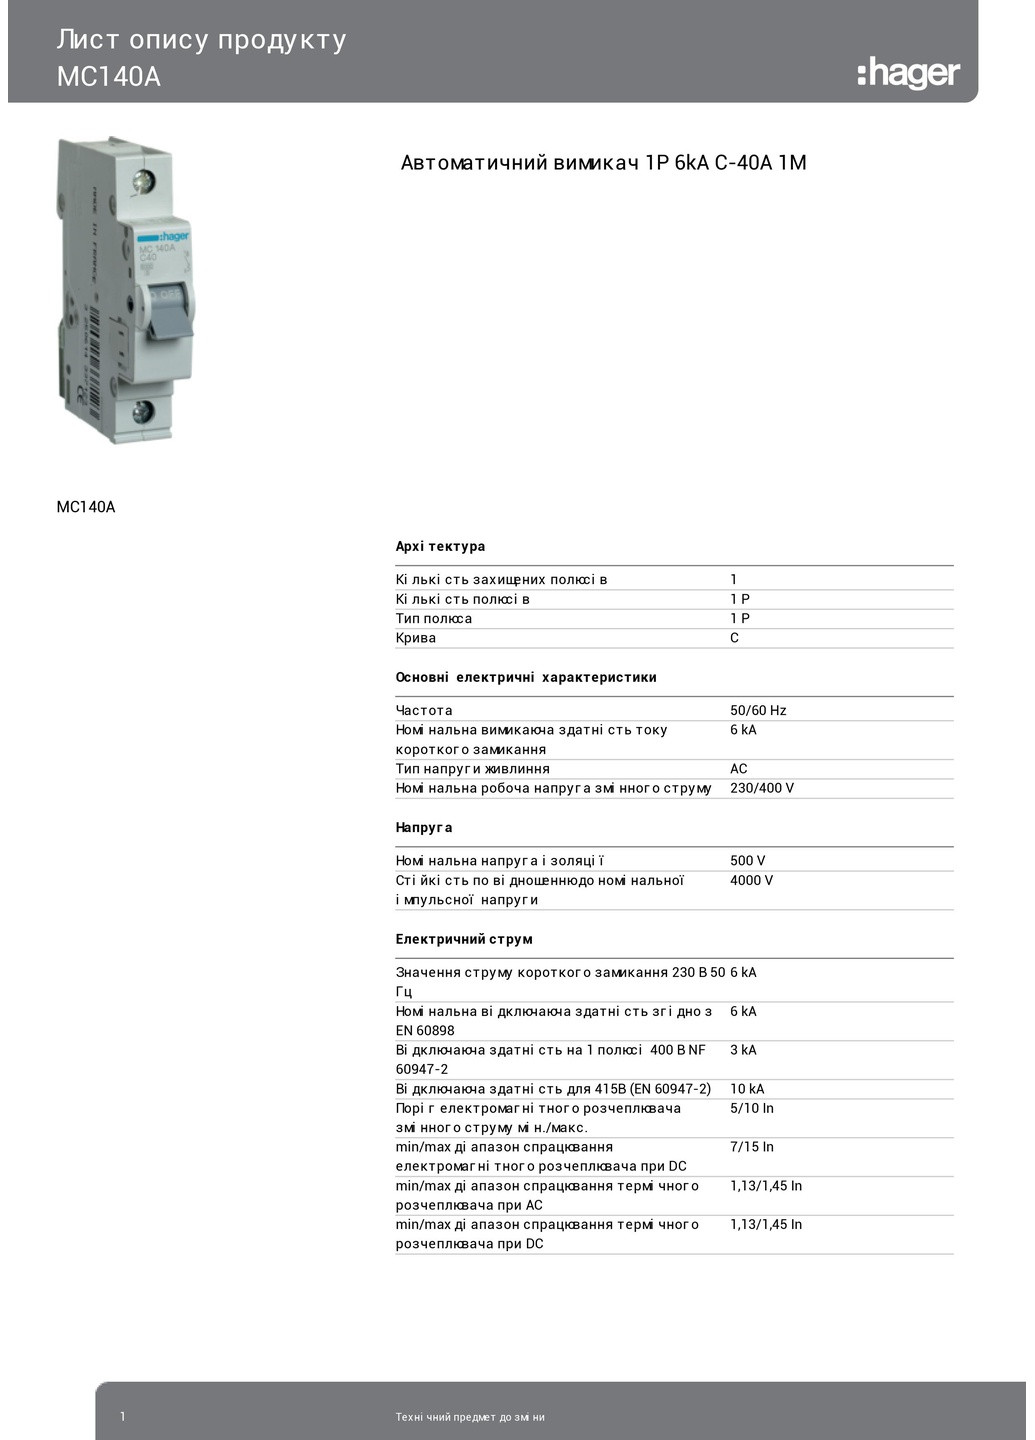 Вводный автомат 40А однополюсный автоматический выключатель MC140A 1P 6kA C40A 1M (3143) Hager (265535310)